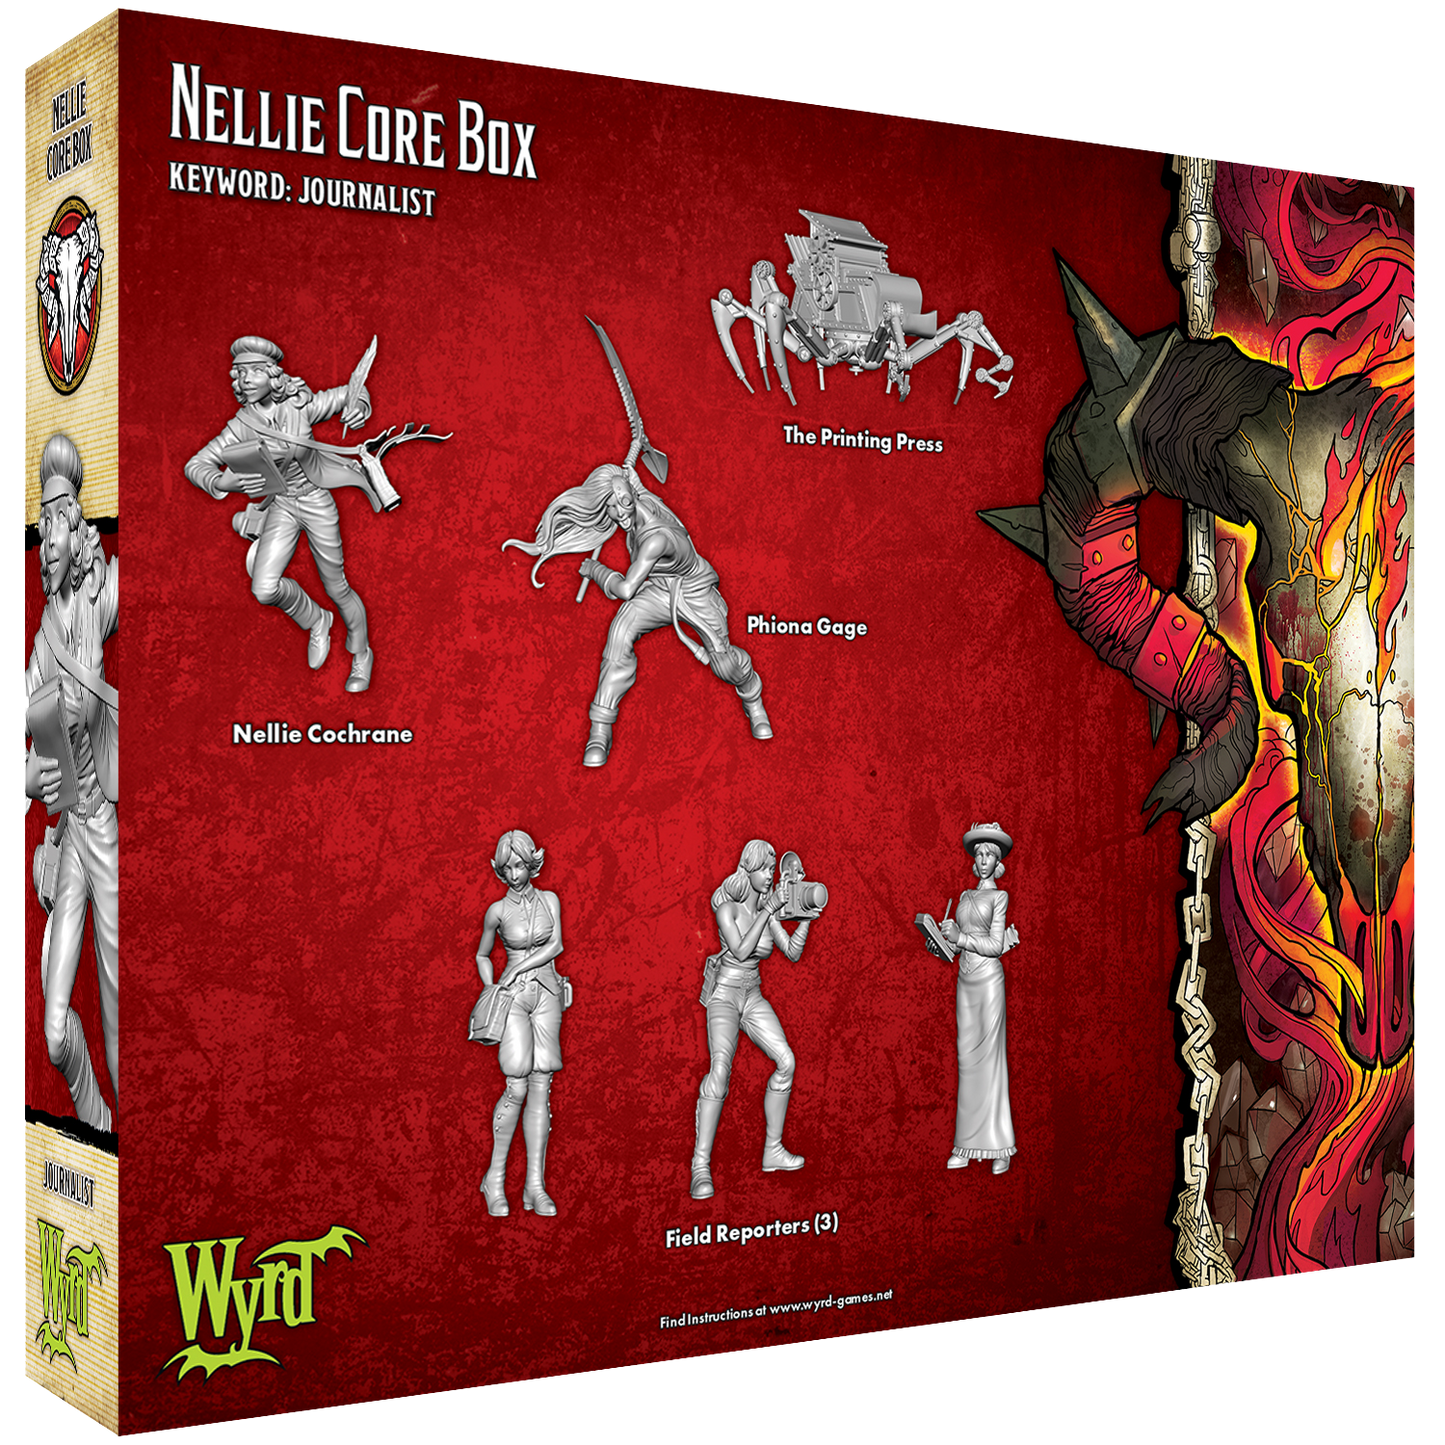 
                  
                    Nellie Core Box
                  
                